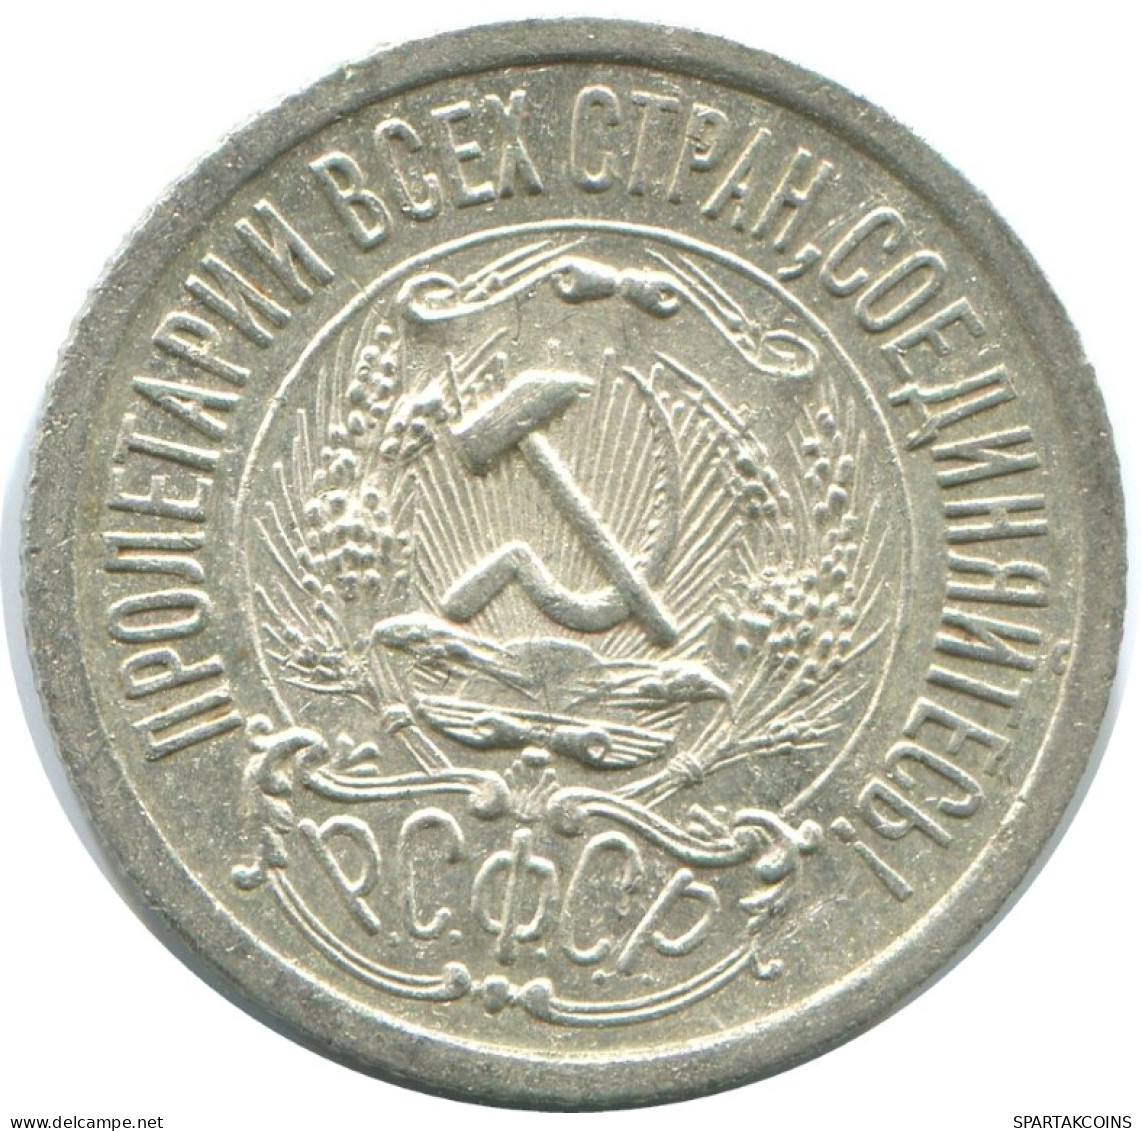 15 KOPEKS 1923 RUSSIA RSFSR SILVER Coin HIGH GRADE #AF063.4.U.A - Russland